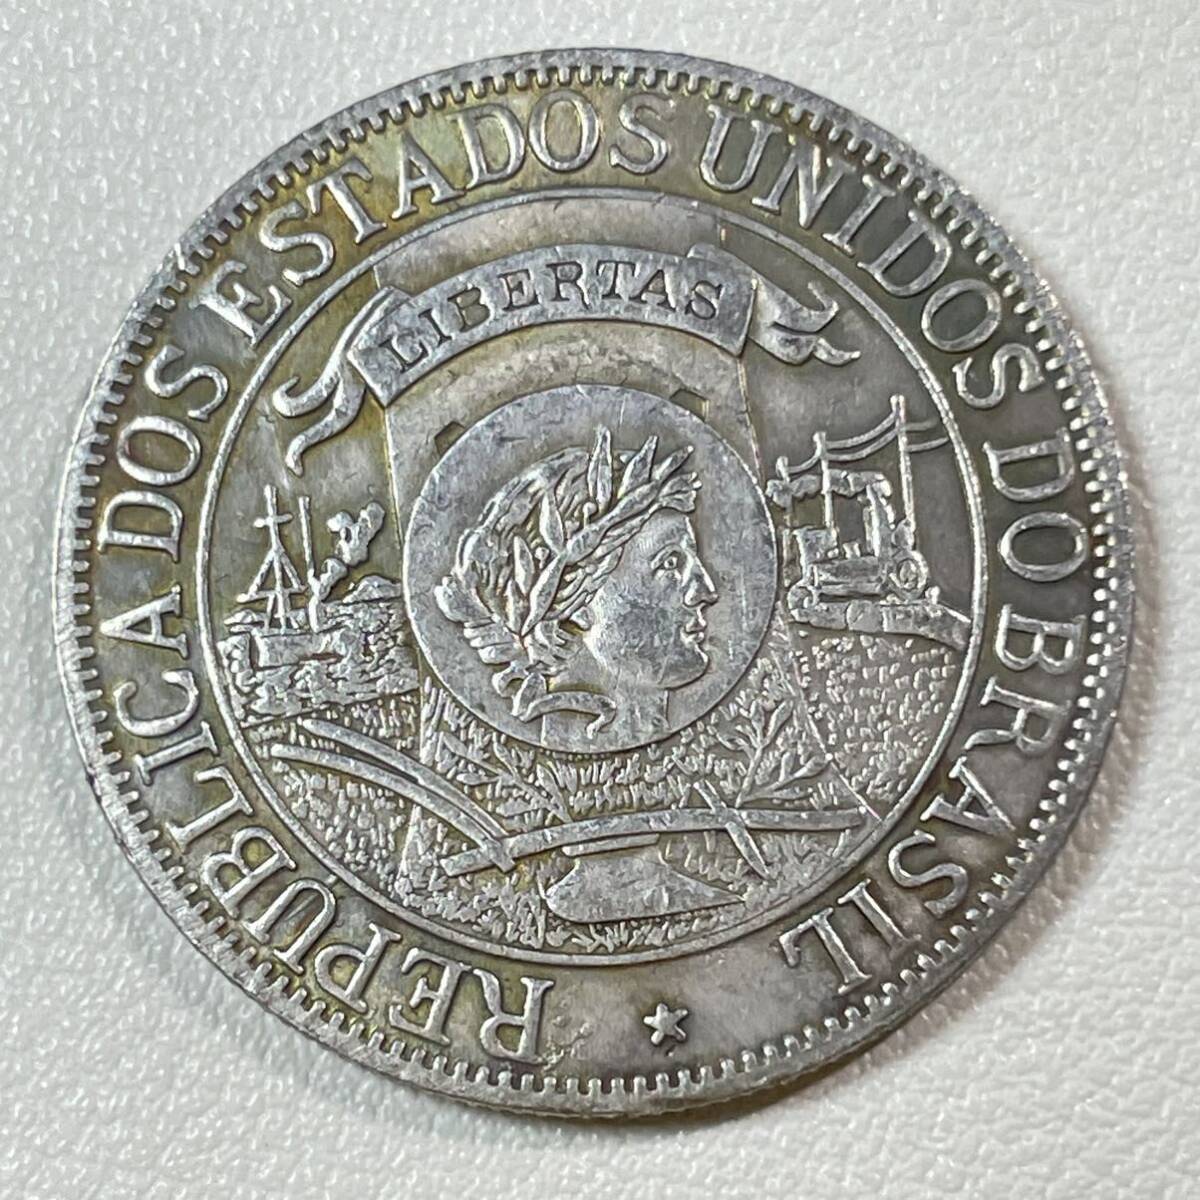 ブラジル 硬貨 古銭 ブラジル発見400周年記念 1900年 「ブラジルアメリカ合衆国共和国」銘 1000レイ 記念幣 コイン 重10.57g の画像1